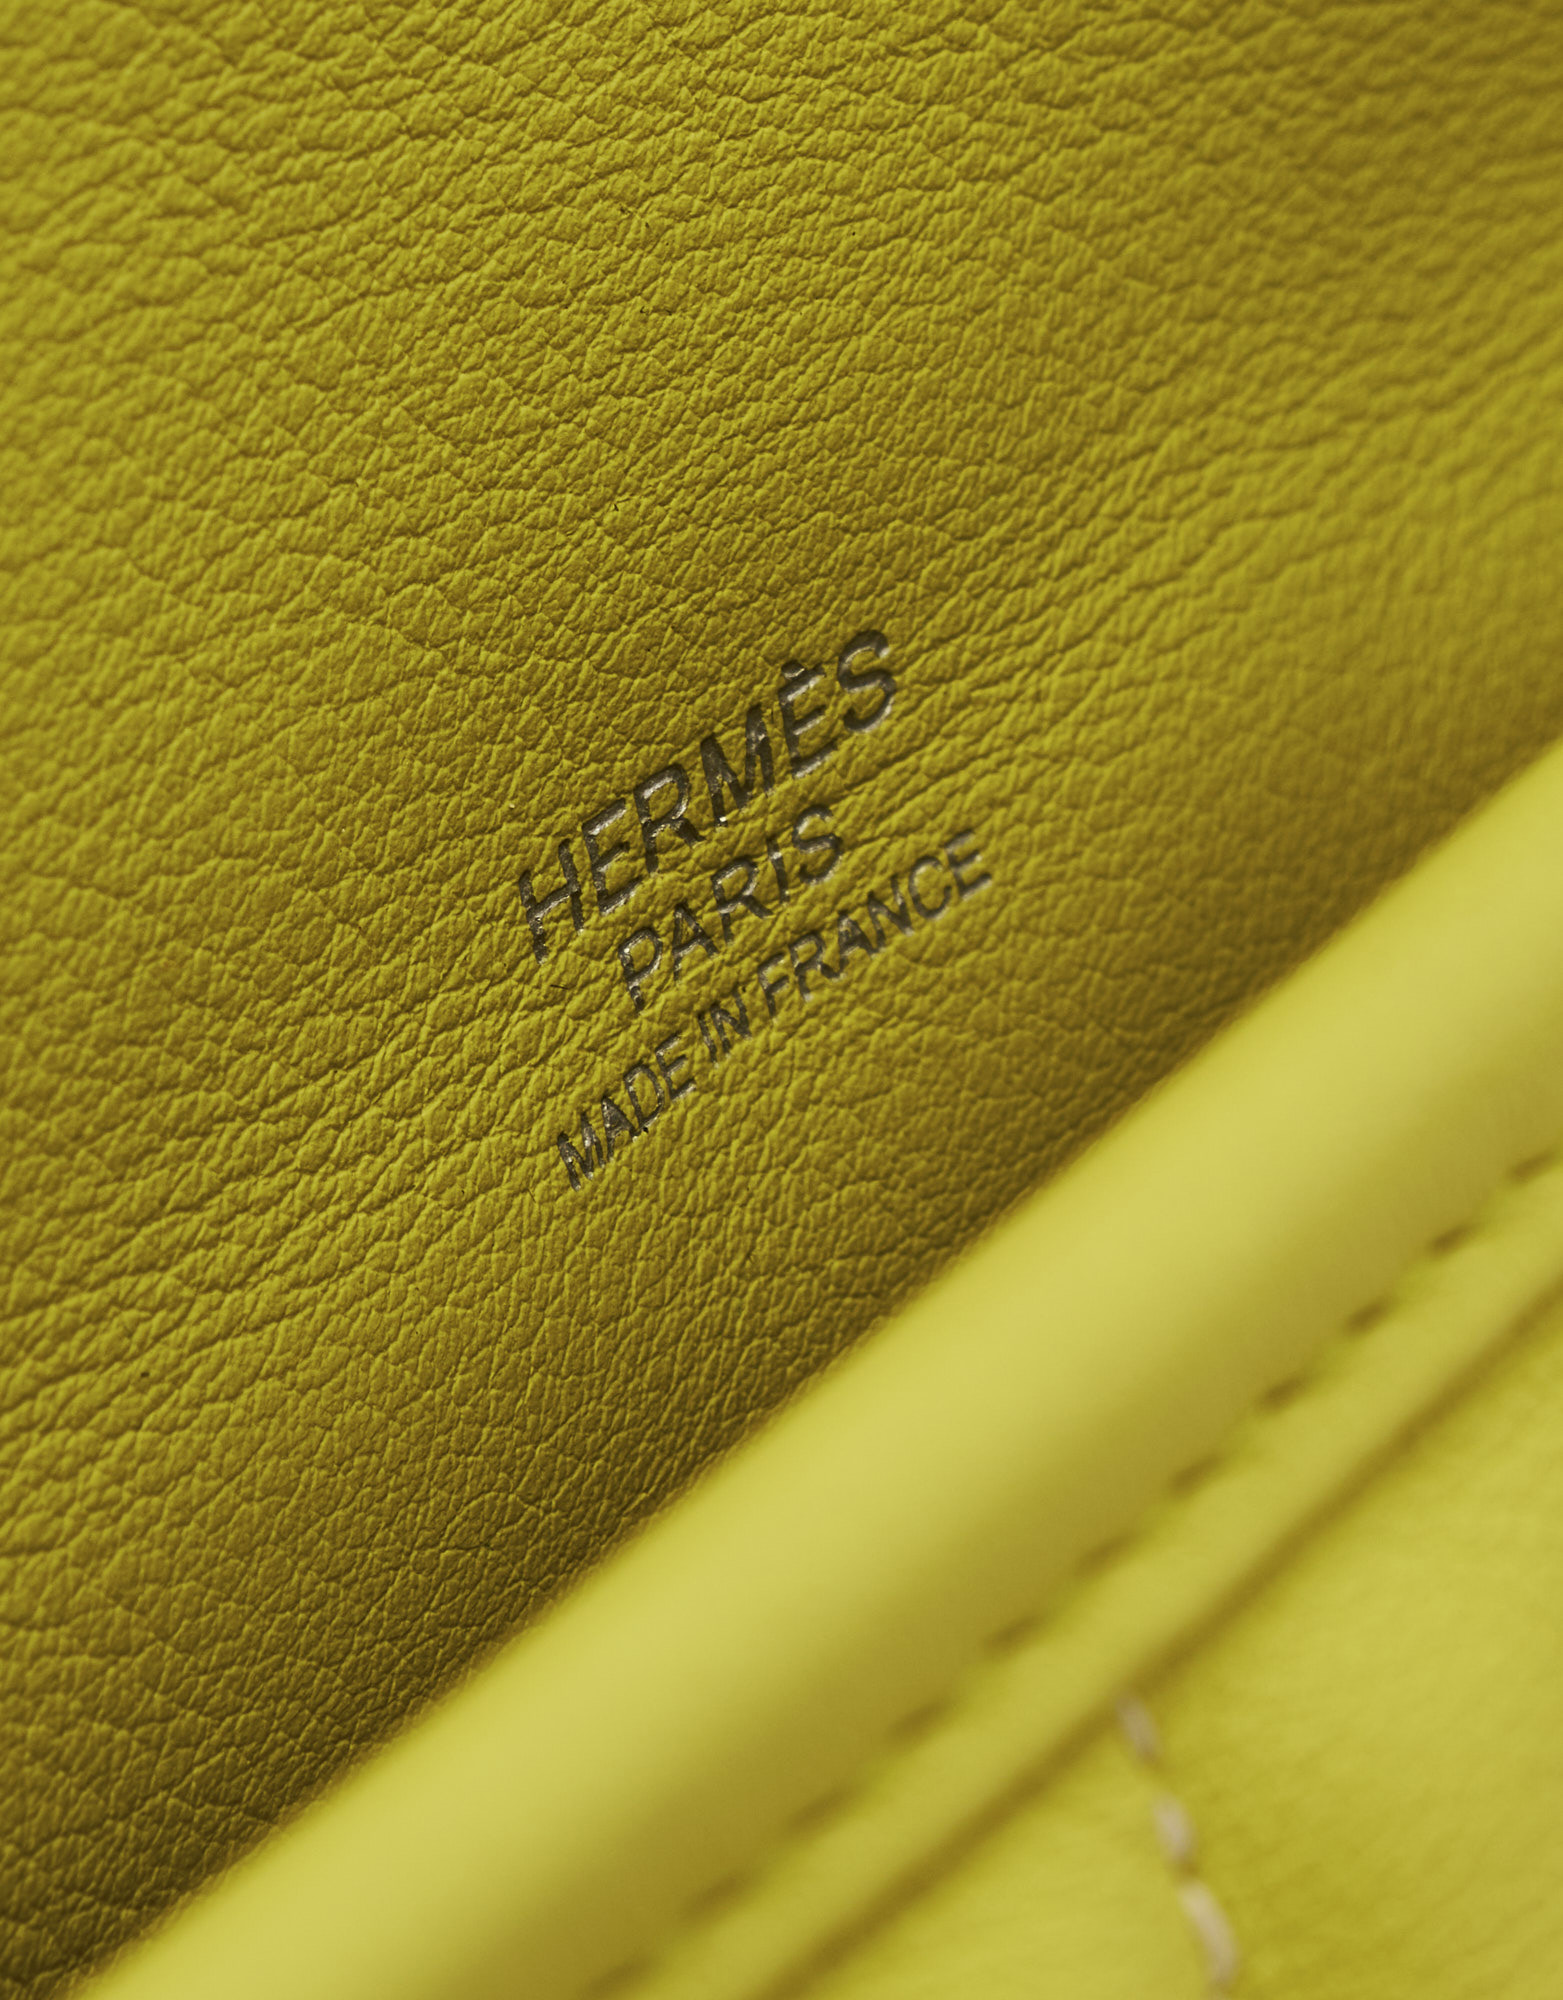 Hermes Berline Mini Shoulder Bag 21 – STYLISHTOP